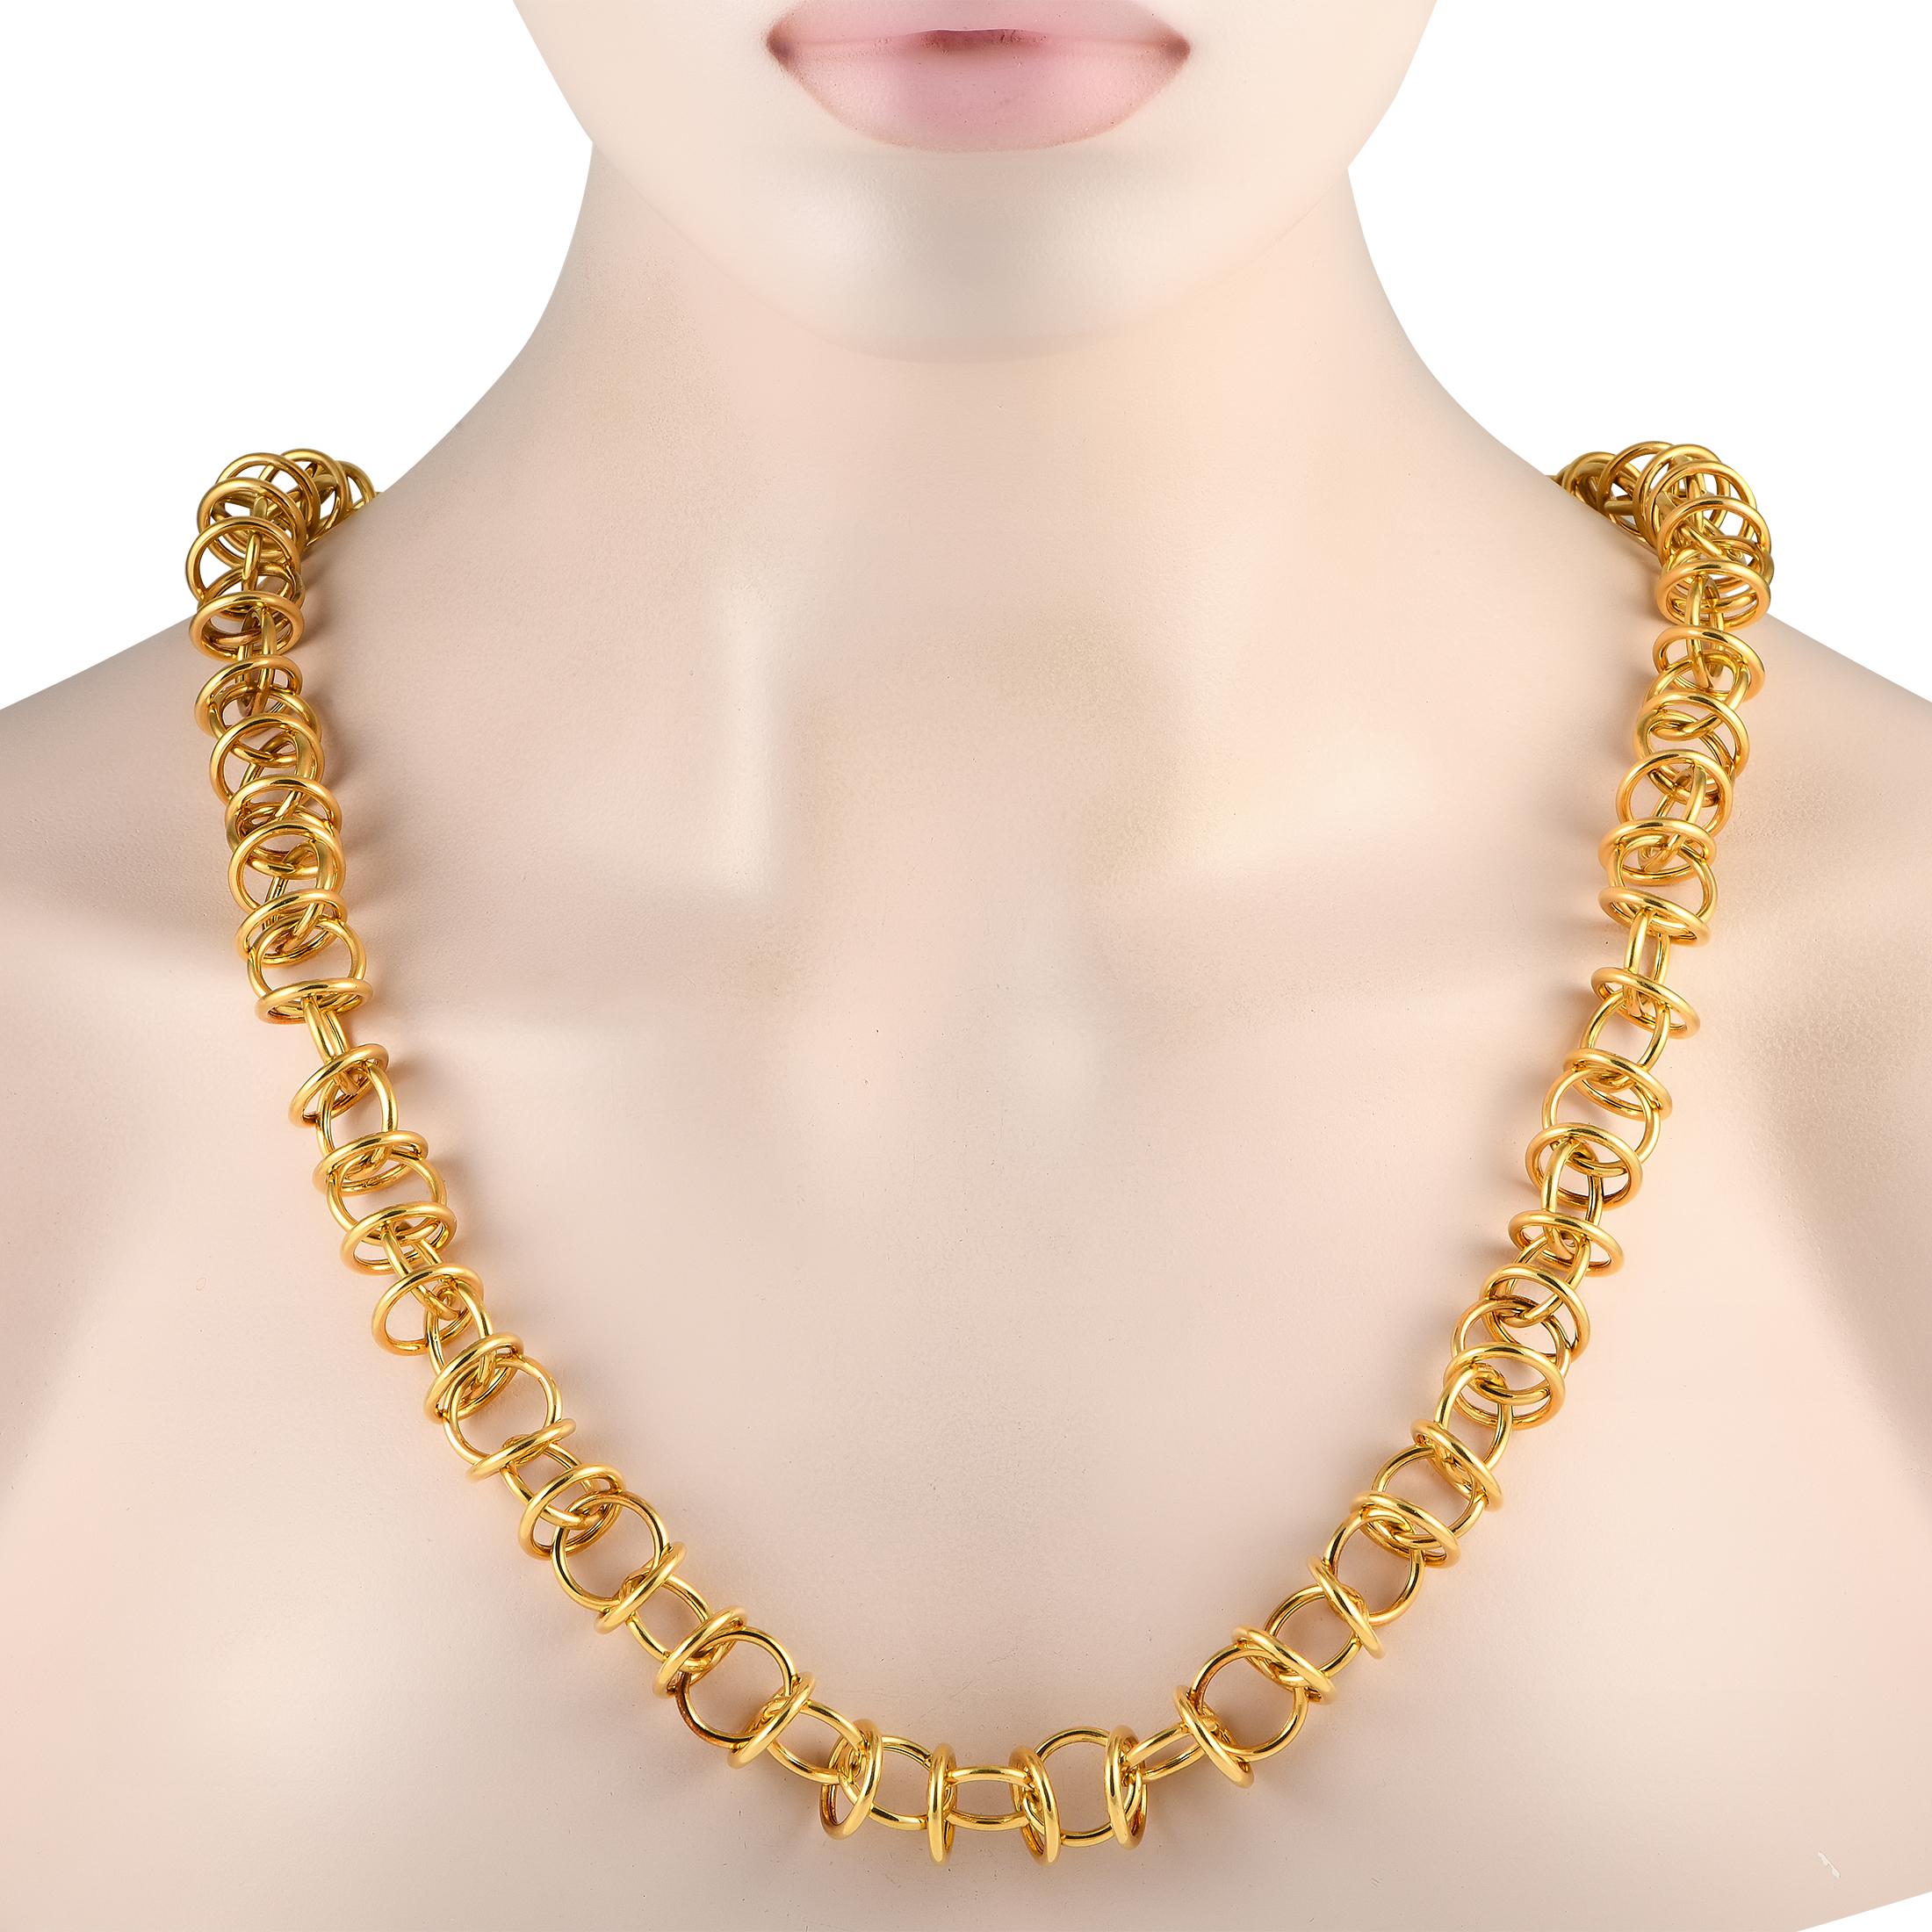 Eine Reihe kreisförmiger Glieder aus 18-karätigem Gelbgold machen diese kühne Halskette von Tiffany & Co. unübersehbar. Dieses schlichte, aber dennoch aussagekräftige Accessoire ist 30 cm lang und makellos verarbeitet. Dieses Schmuckstück wird im